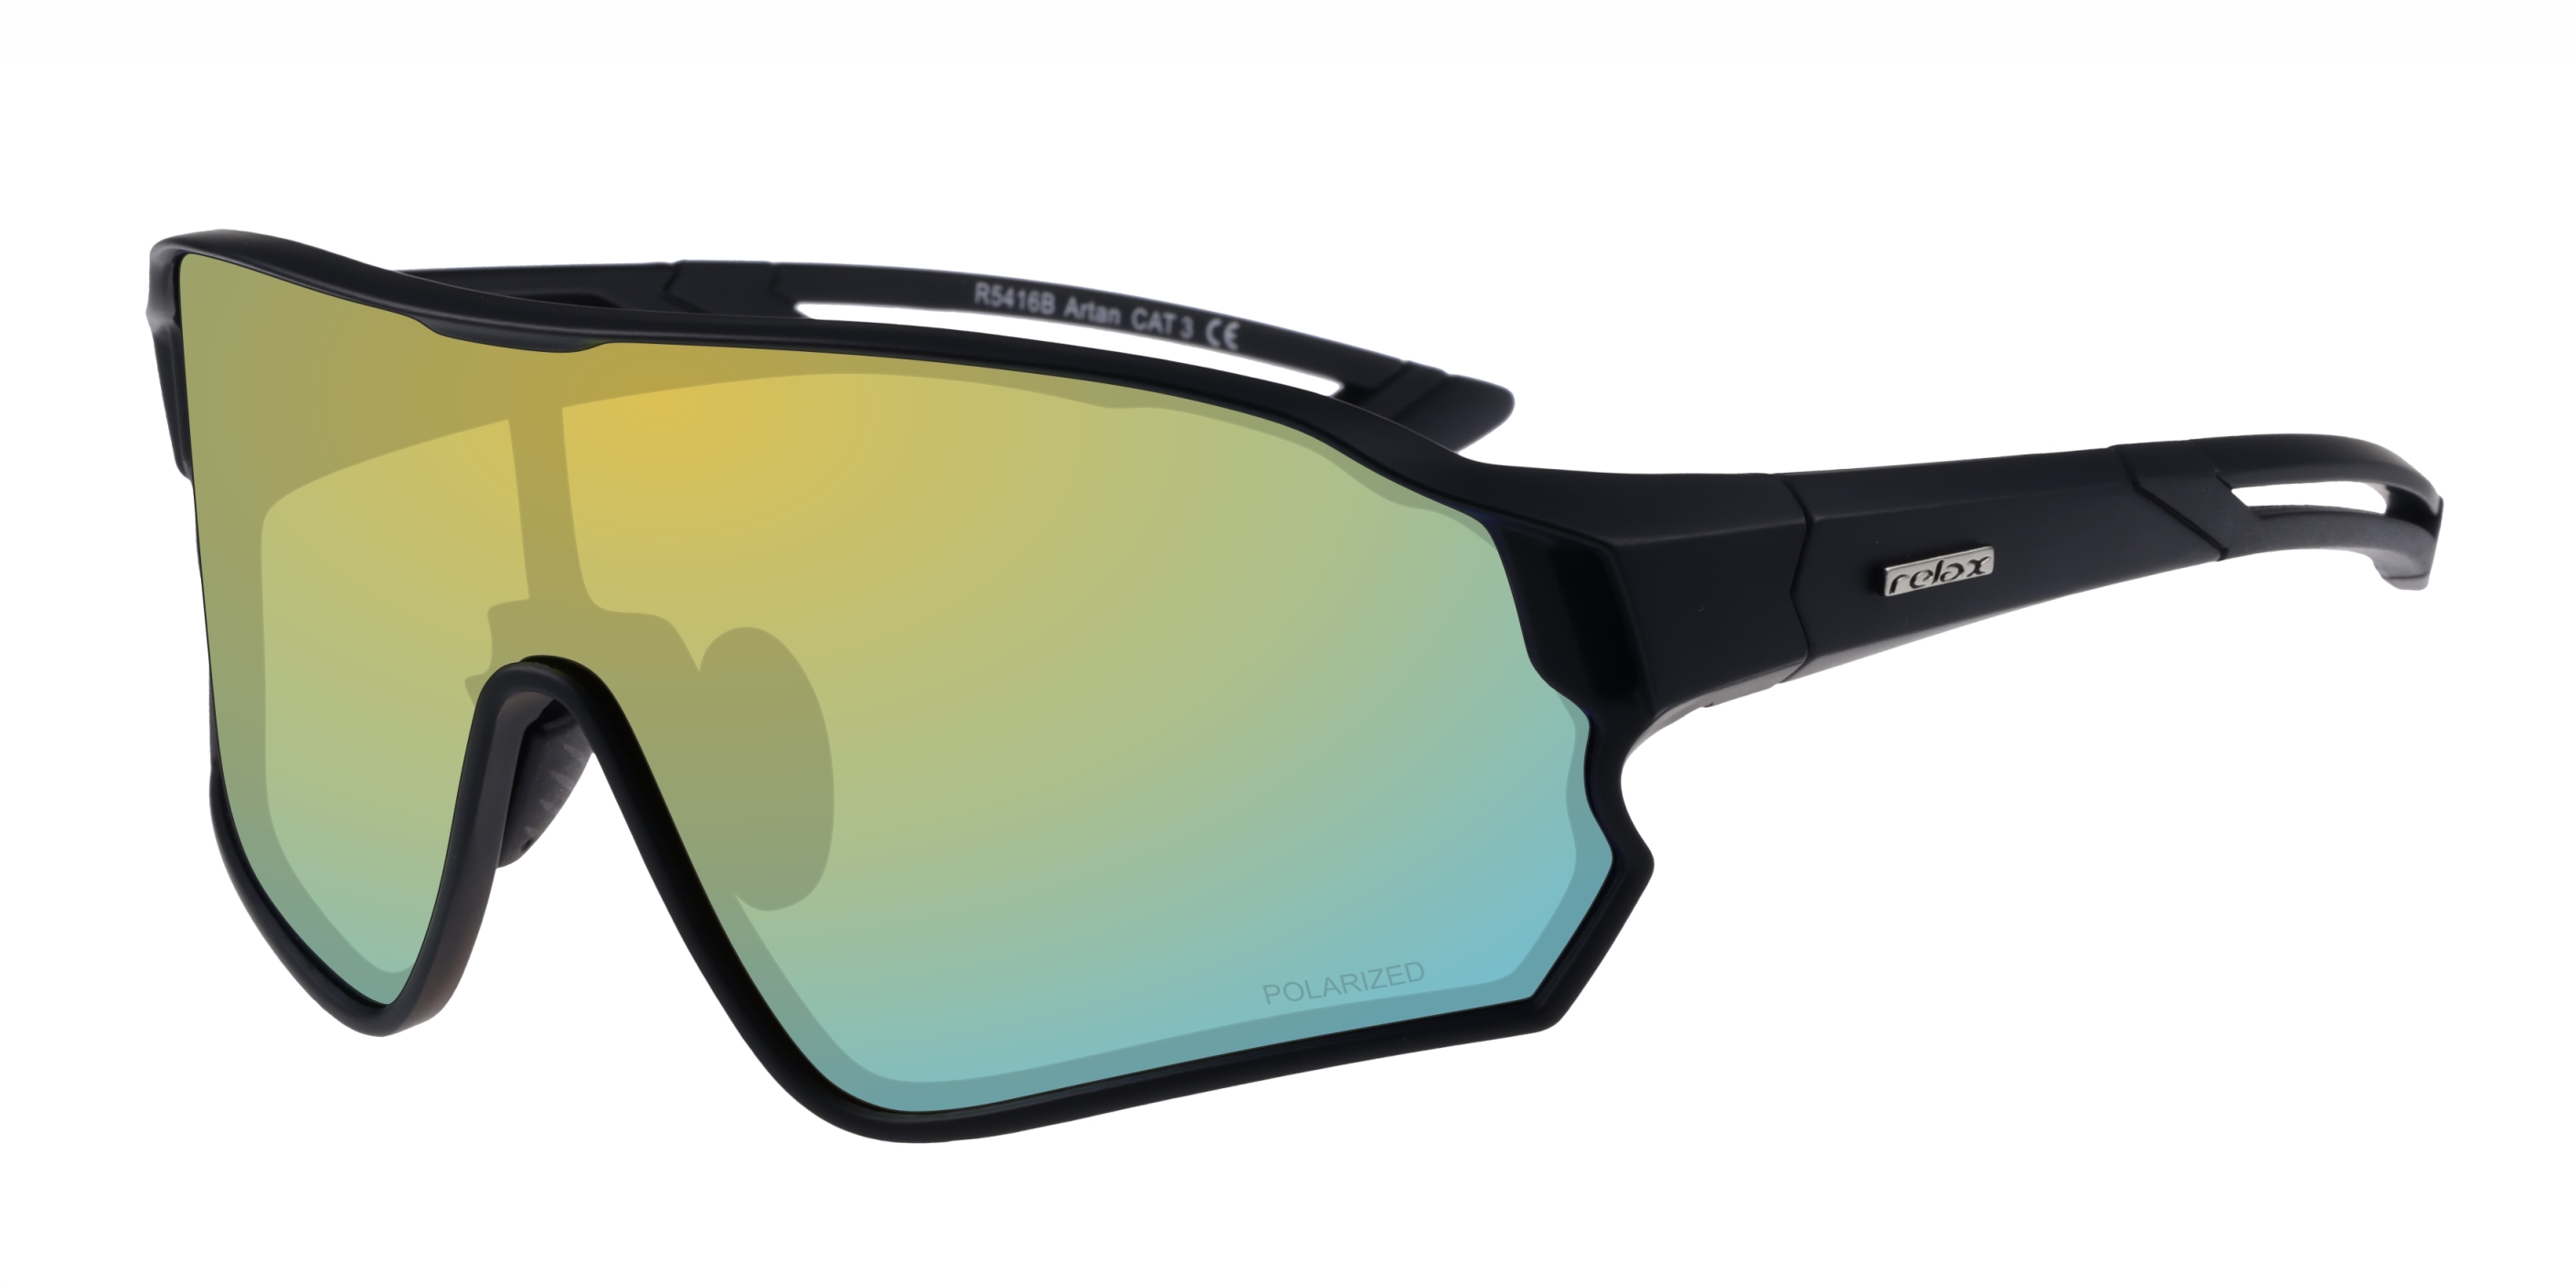 Polarized sport sunglasses Relax Artan R5416B standard